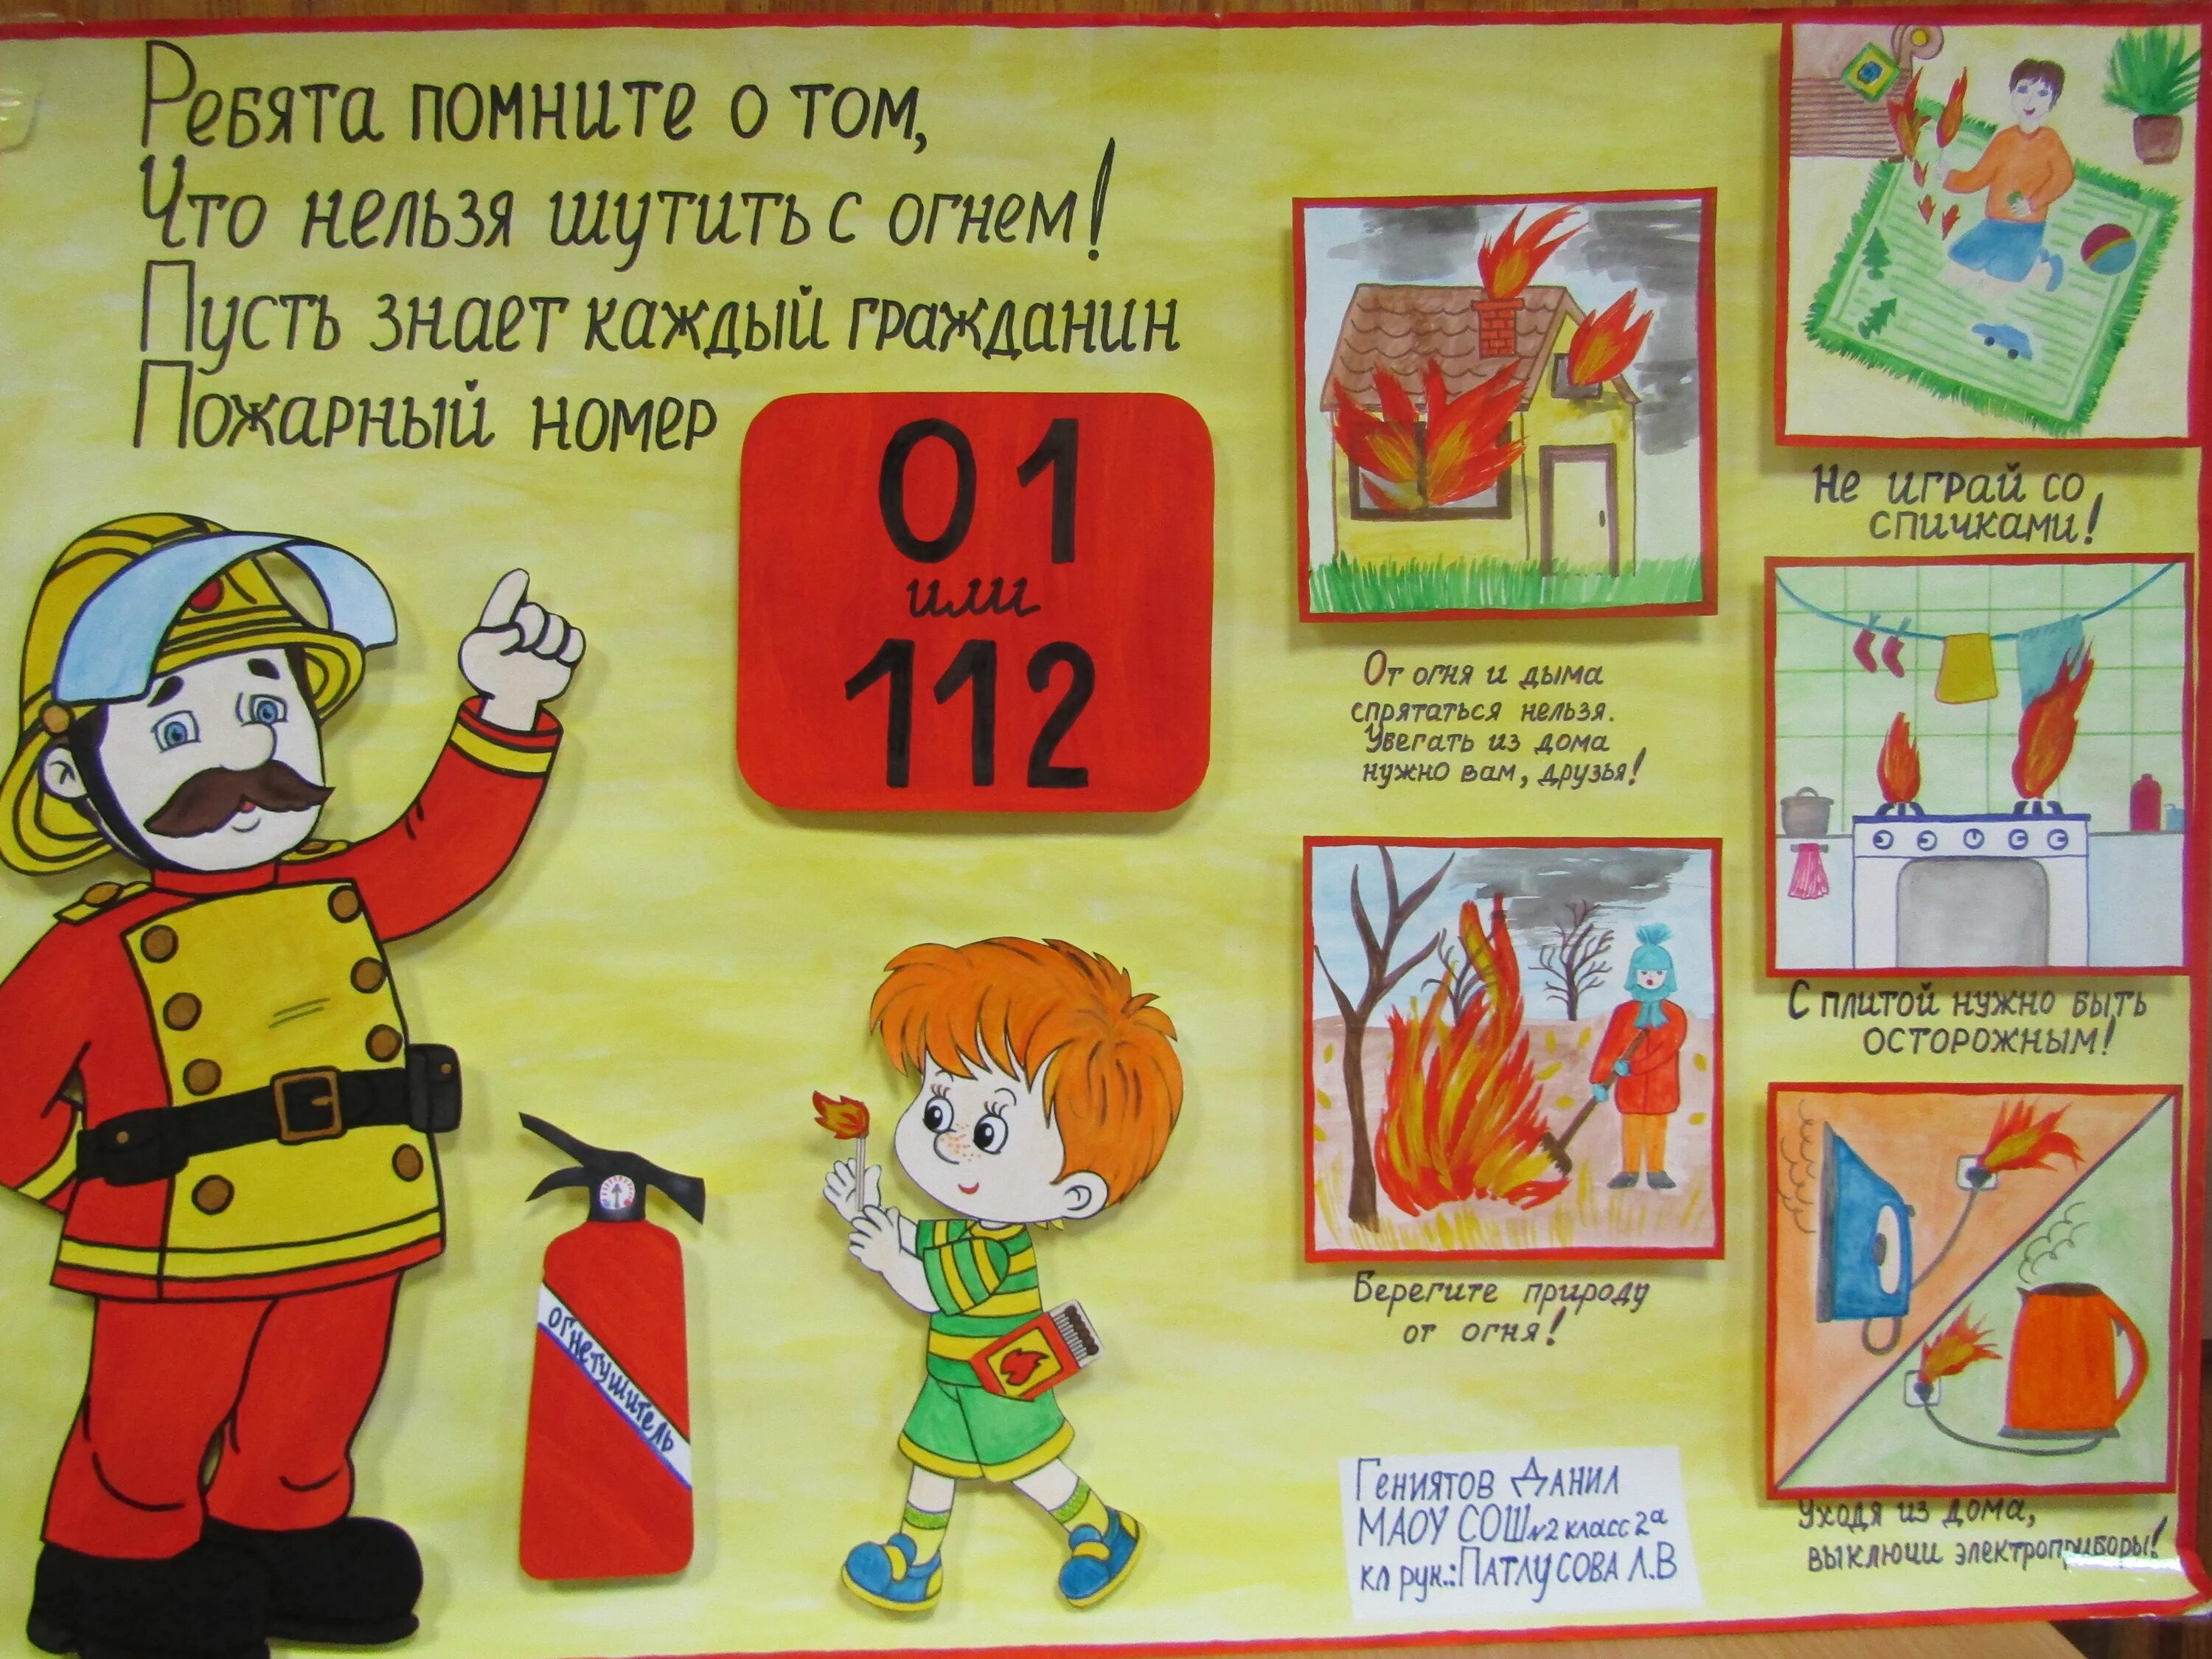 Рисунок пожарная безопасность. Плакат на тему противопожарная безопасность. Противопожарная безопасность рисунки. Плакат на тему плжарной безопасност. Плакат пожарного для детей